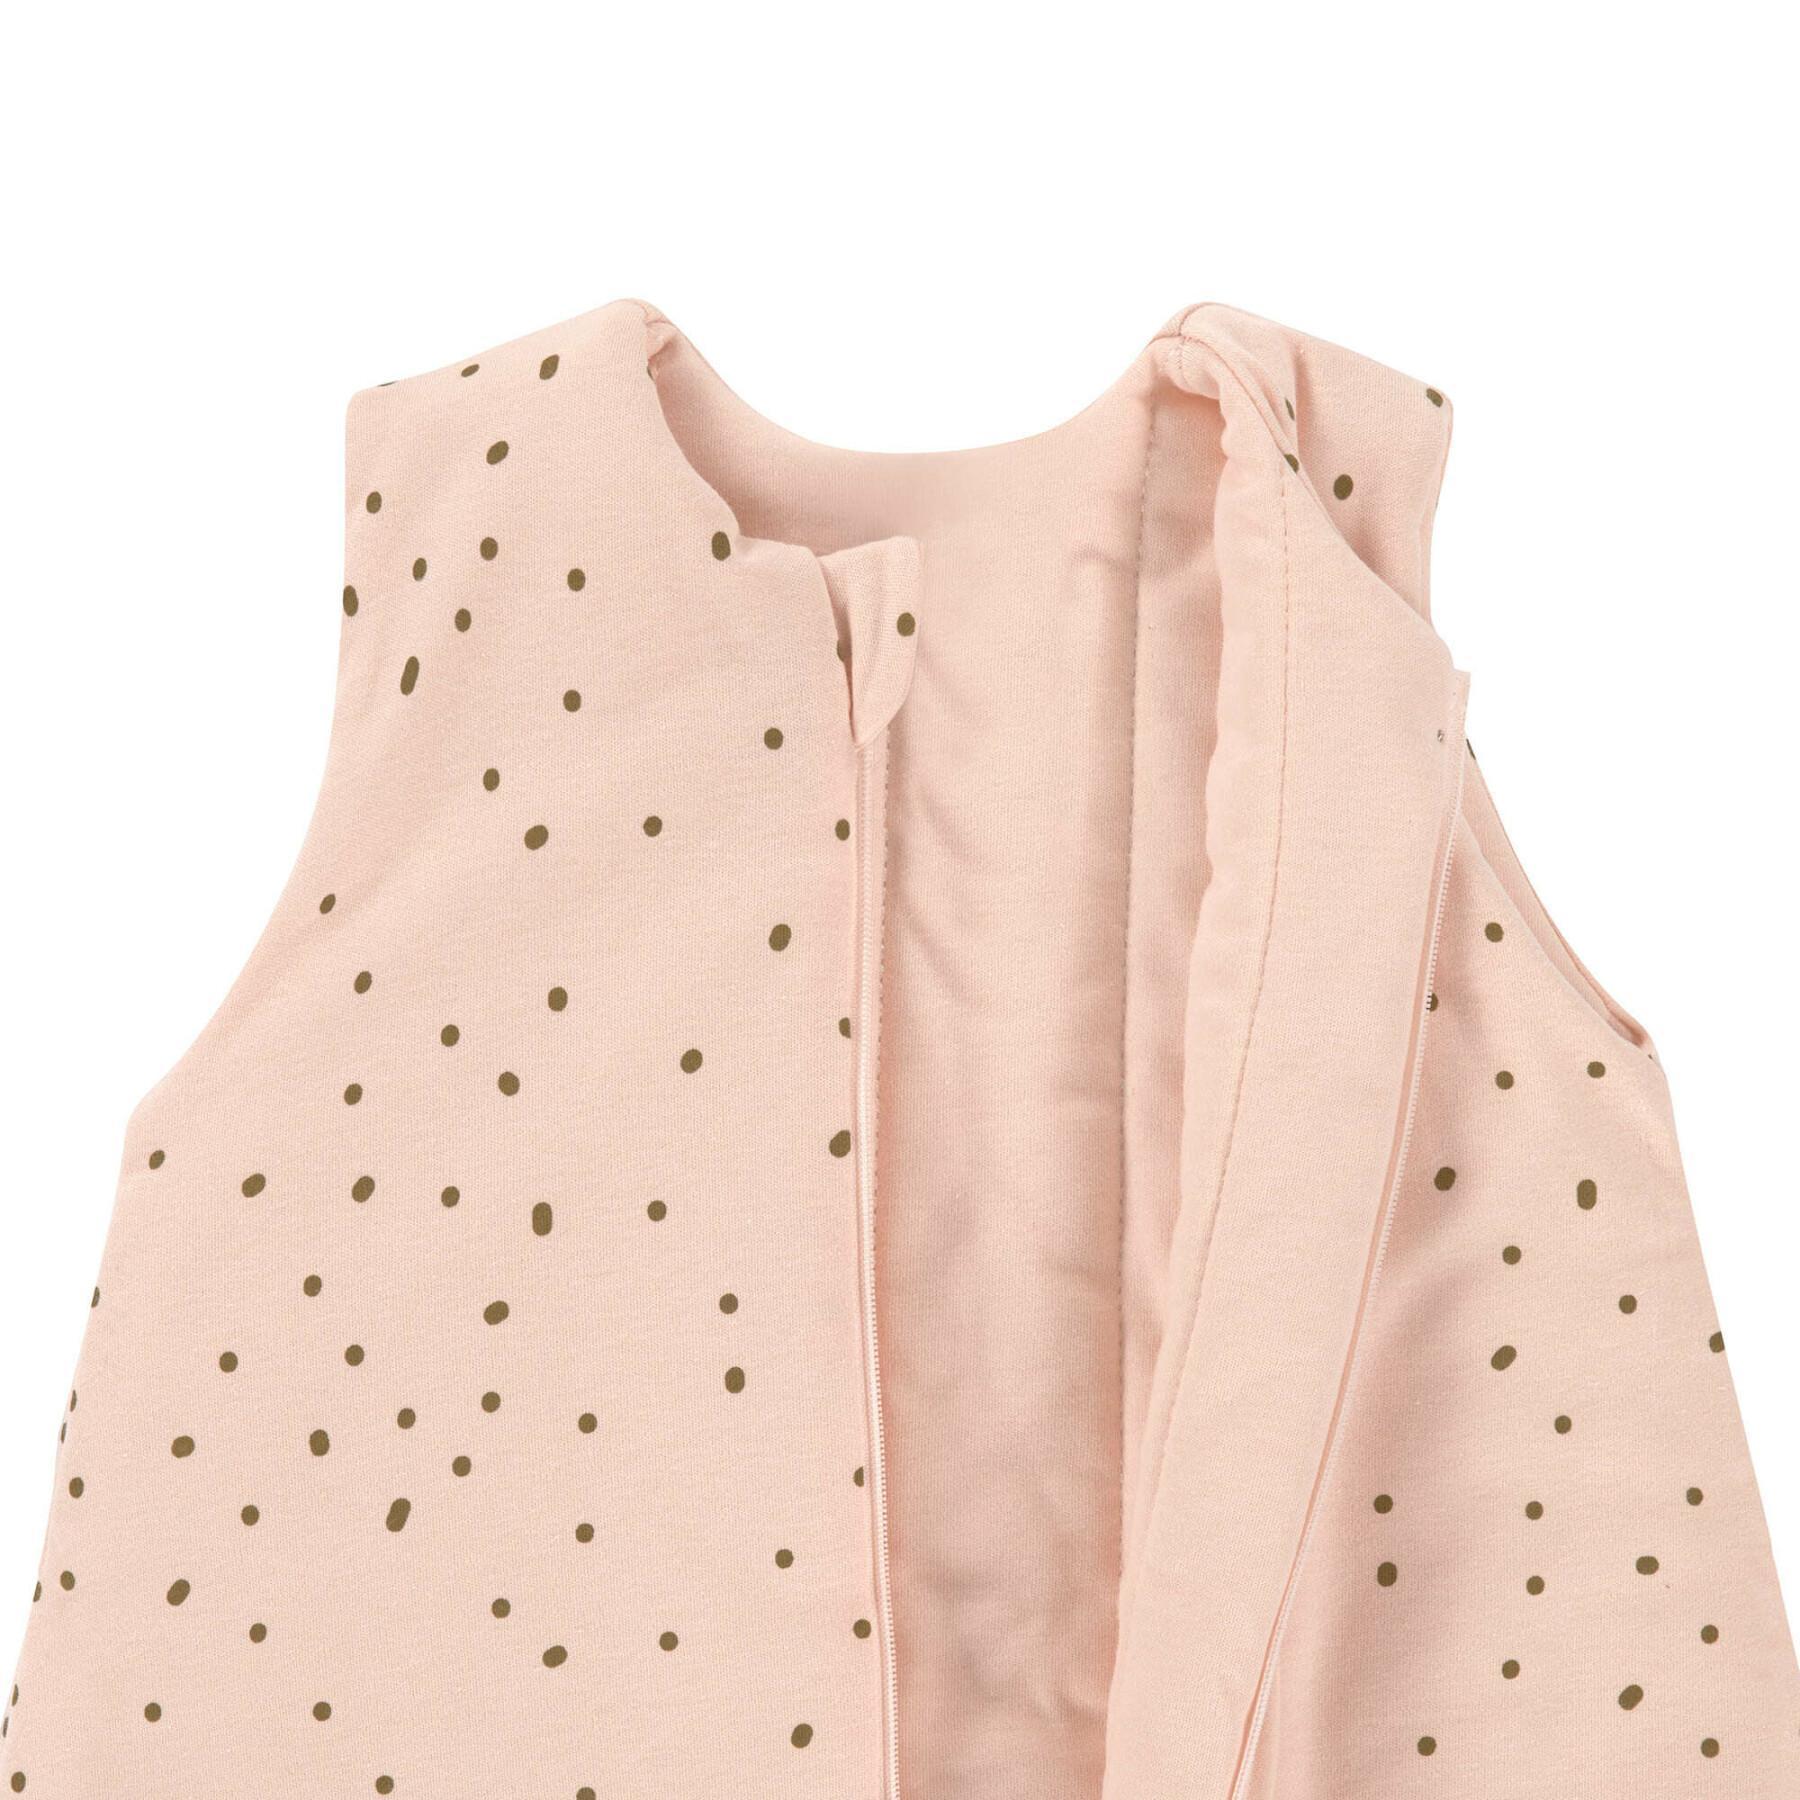 Pyjamas baby suit Lässig Dots